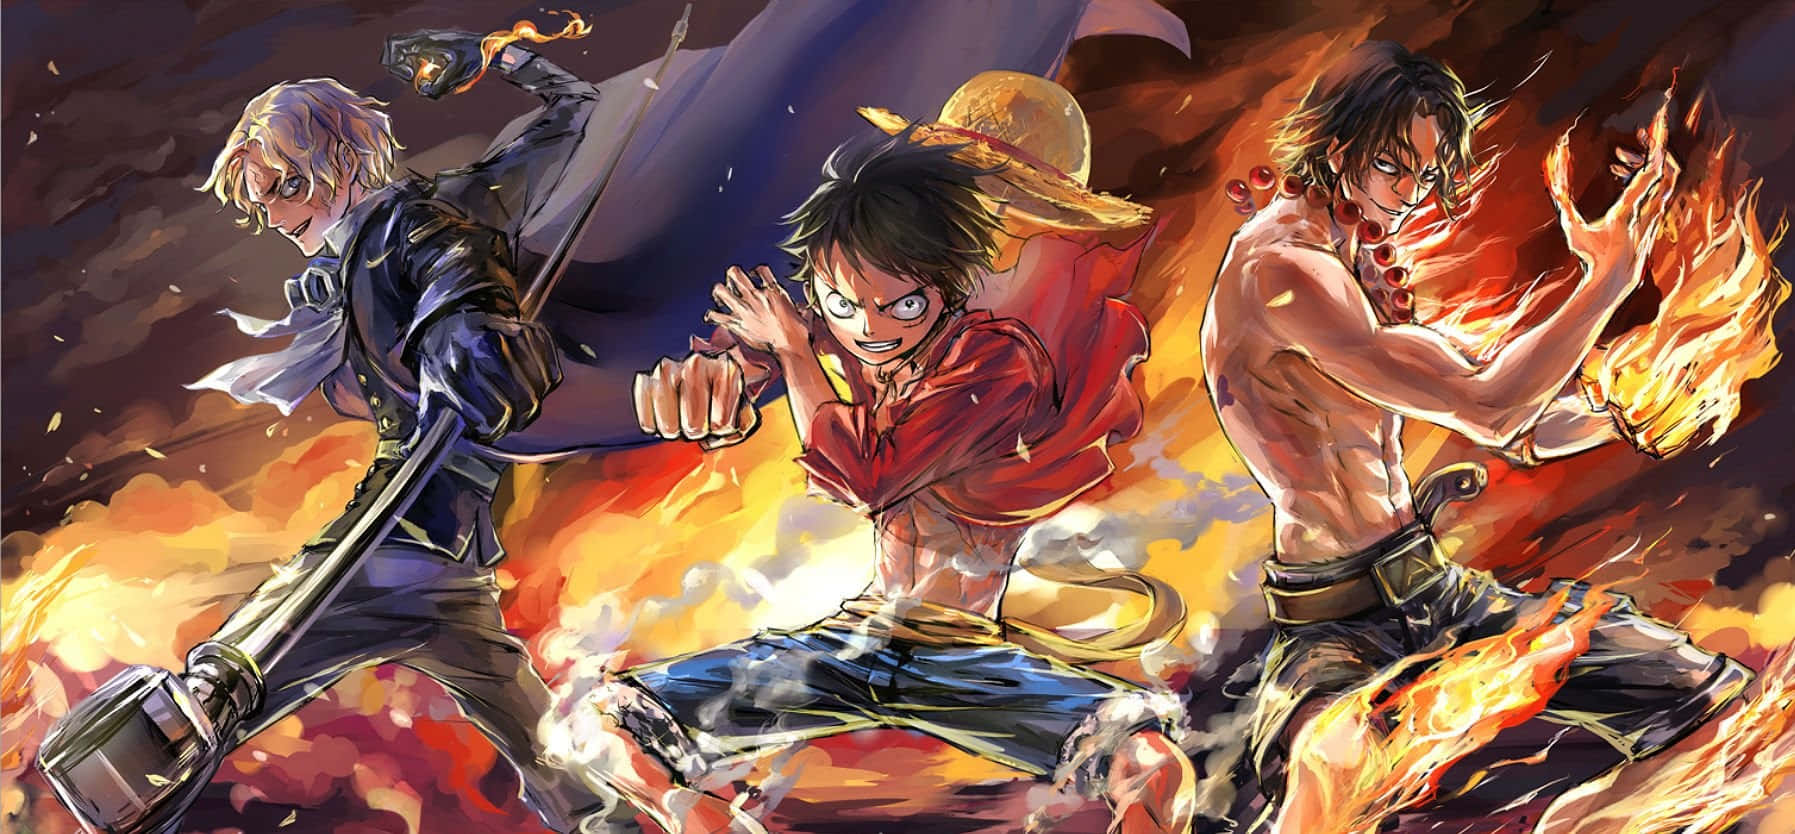 Google Anime Flaming One Piece (google Das Anime Bild One Piece Mit Flammen) Wallpaper